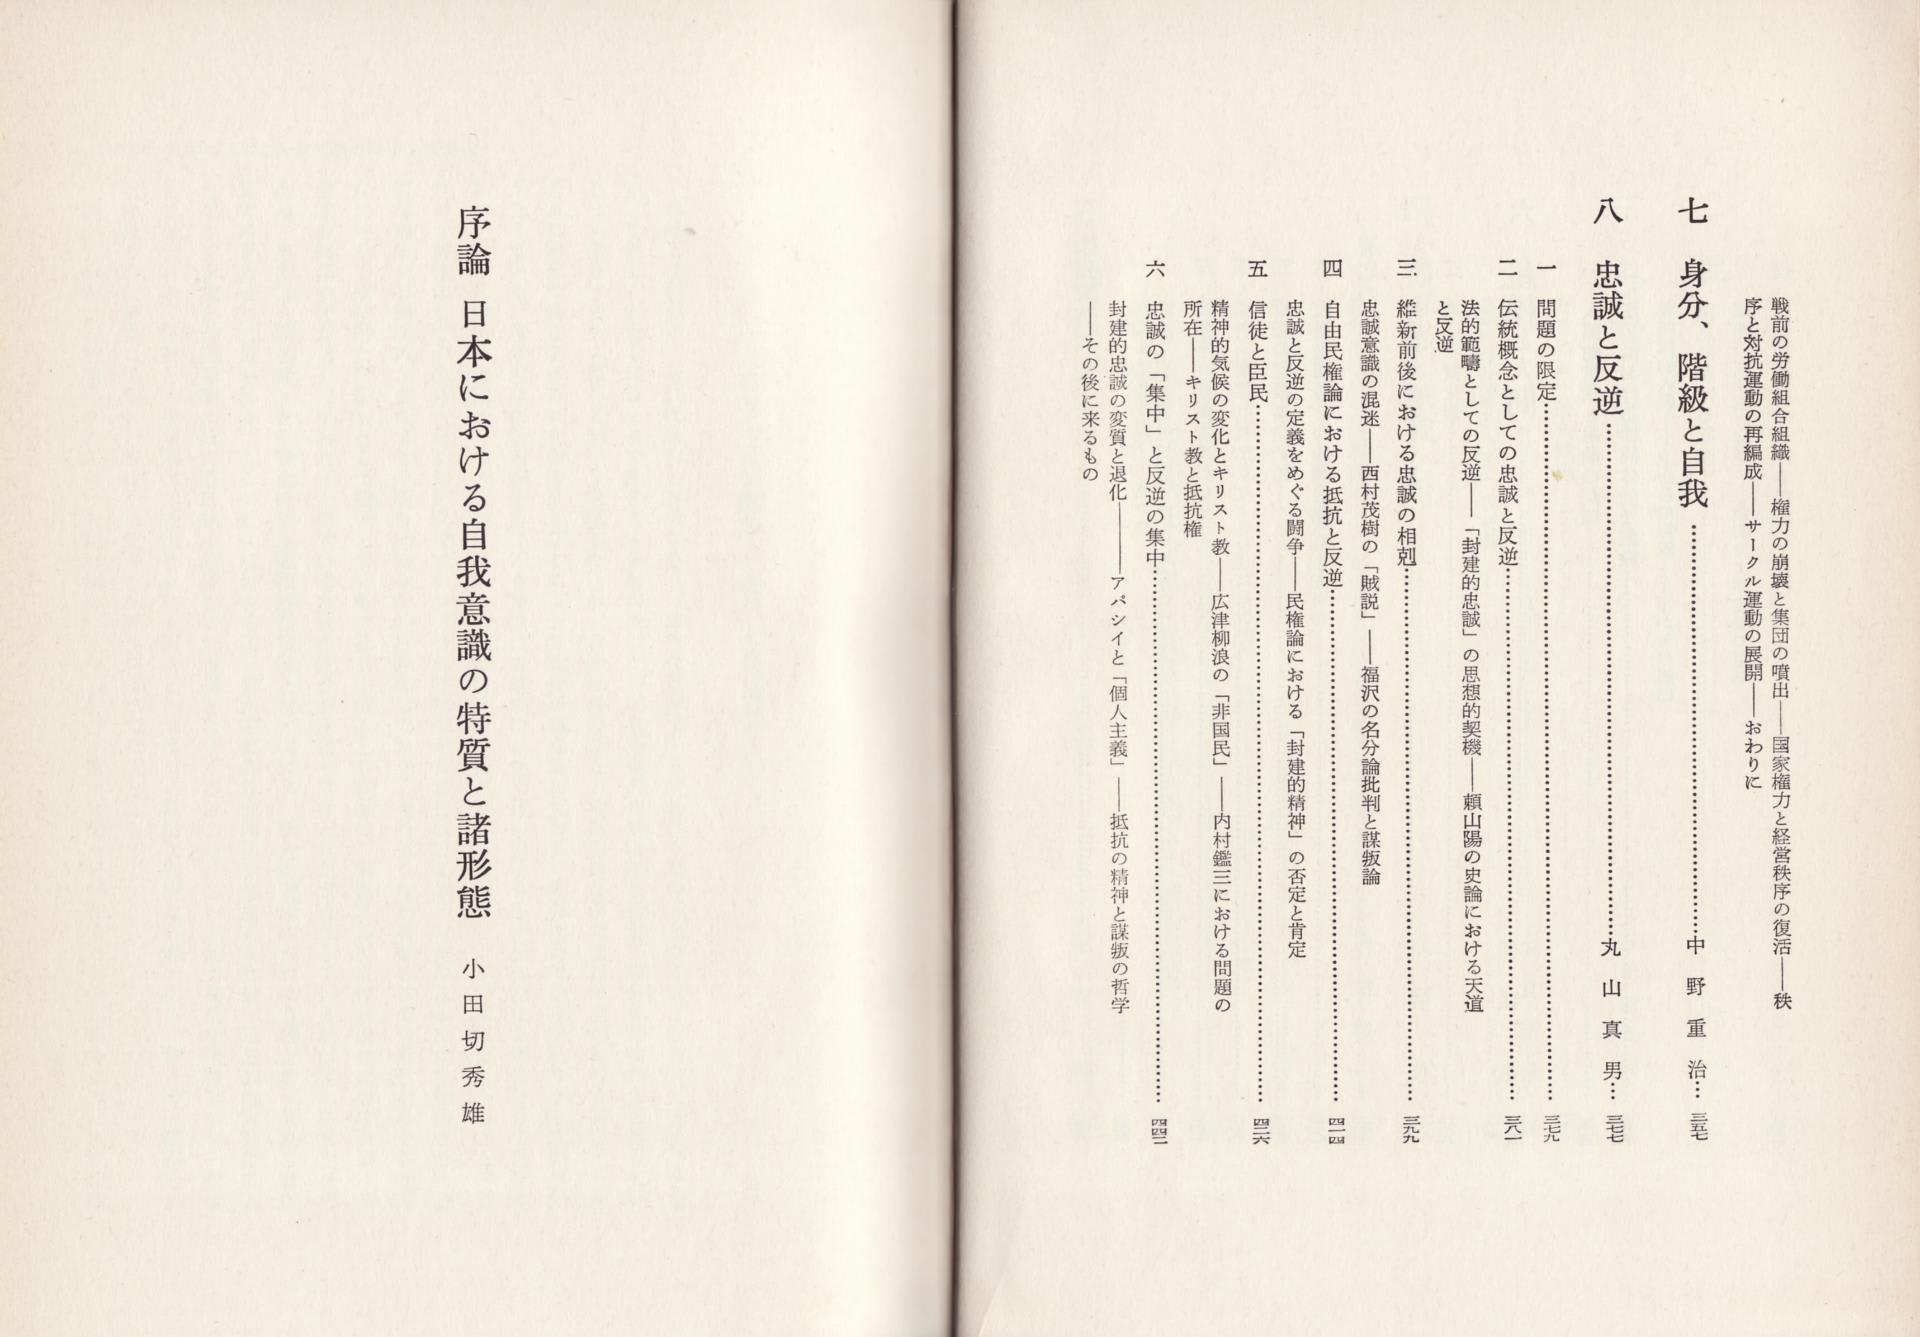 近代日本思想史講座』 １９５９－１９６１ 筑摩書房 ７冊 執筆者・論文 